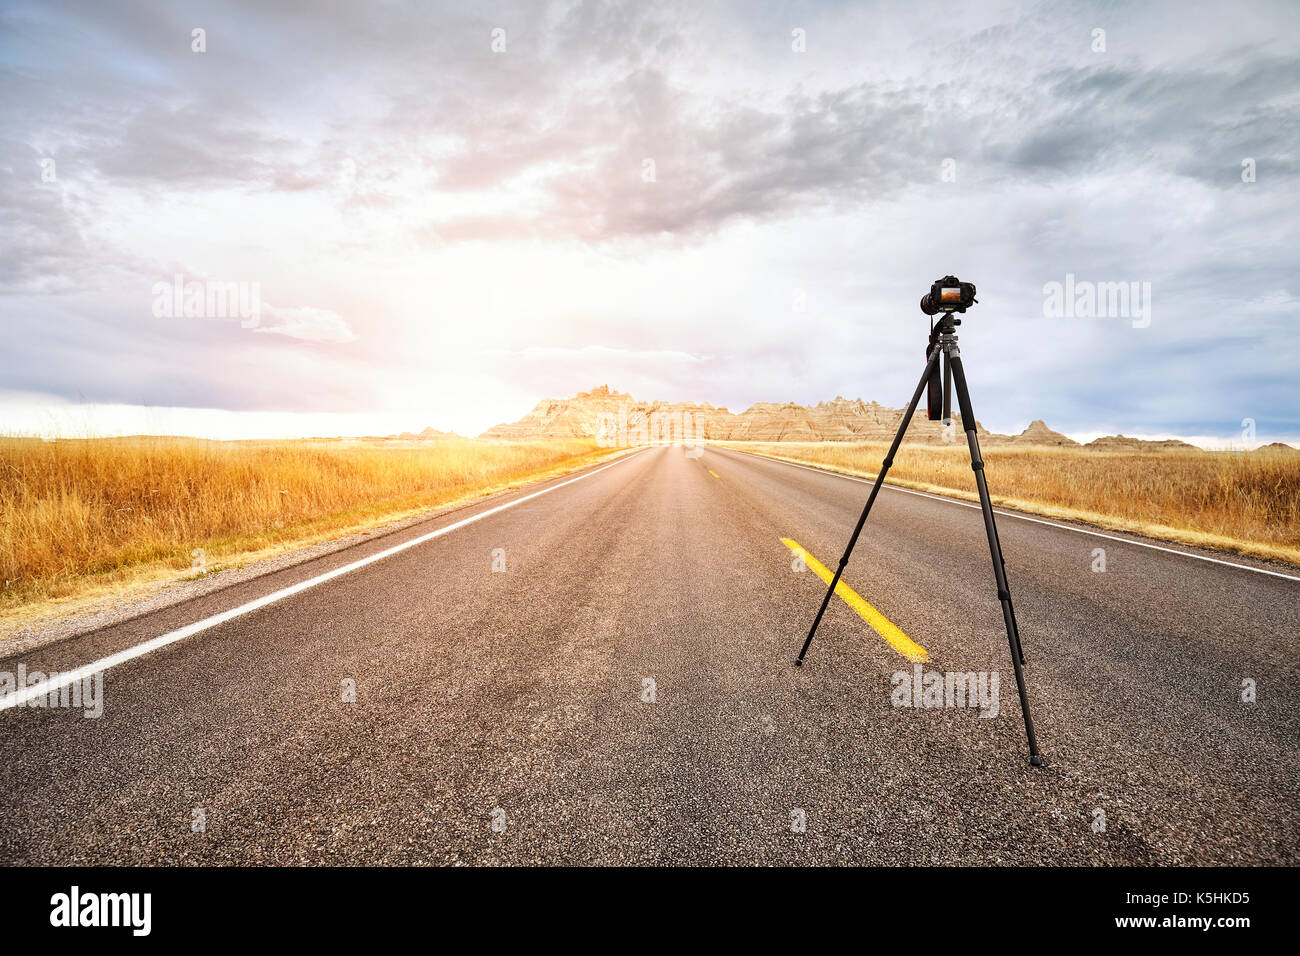 Appareil photo sur trépied photo professionnel sur une route vide au coucher du soleil, l'accent sur l'appareil photo de voyage ou de travail, concept, Badlands National Park, South Dakota, USA Banque D'Images